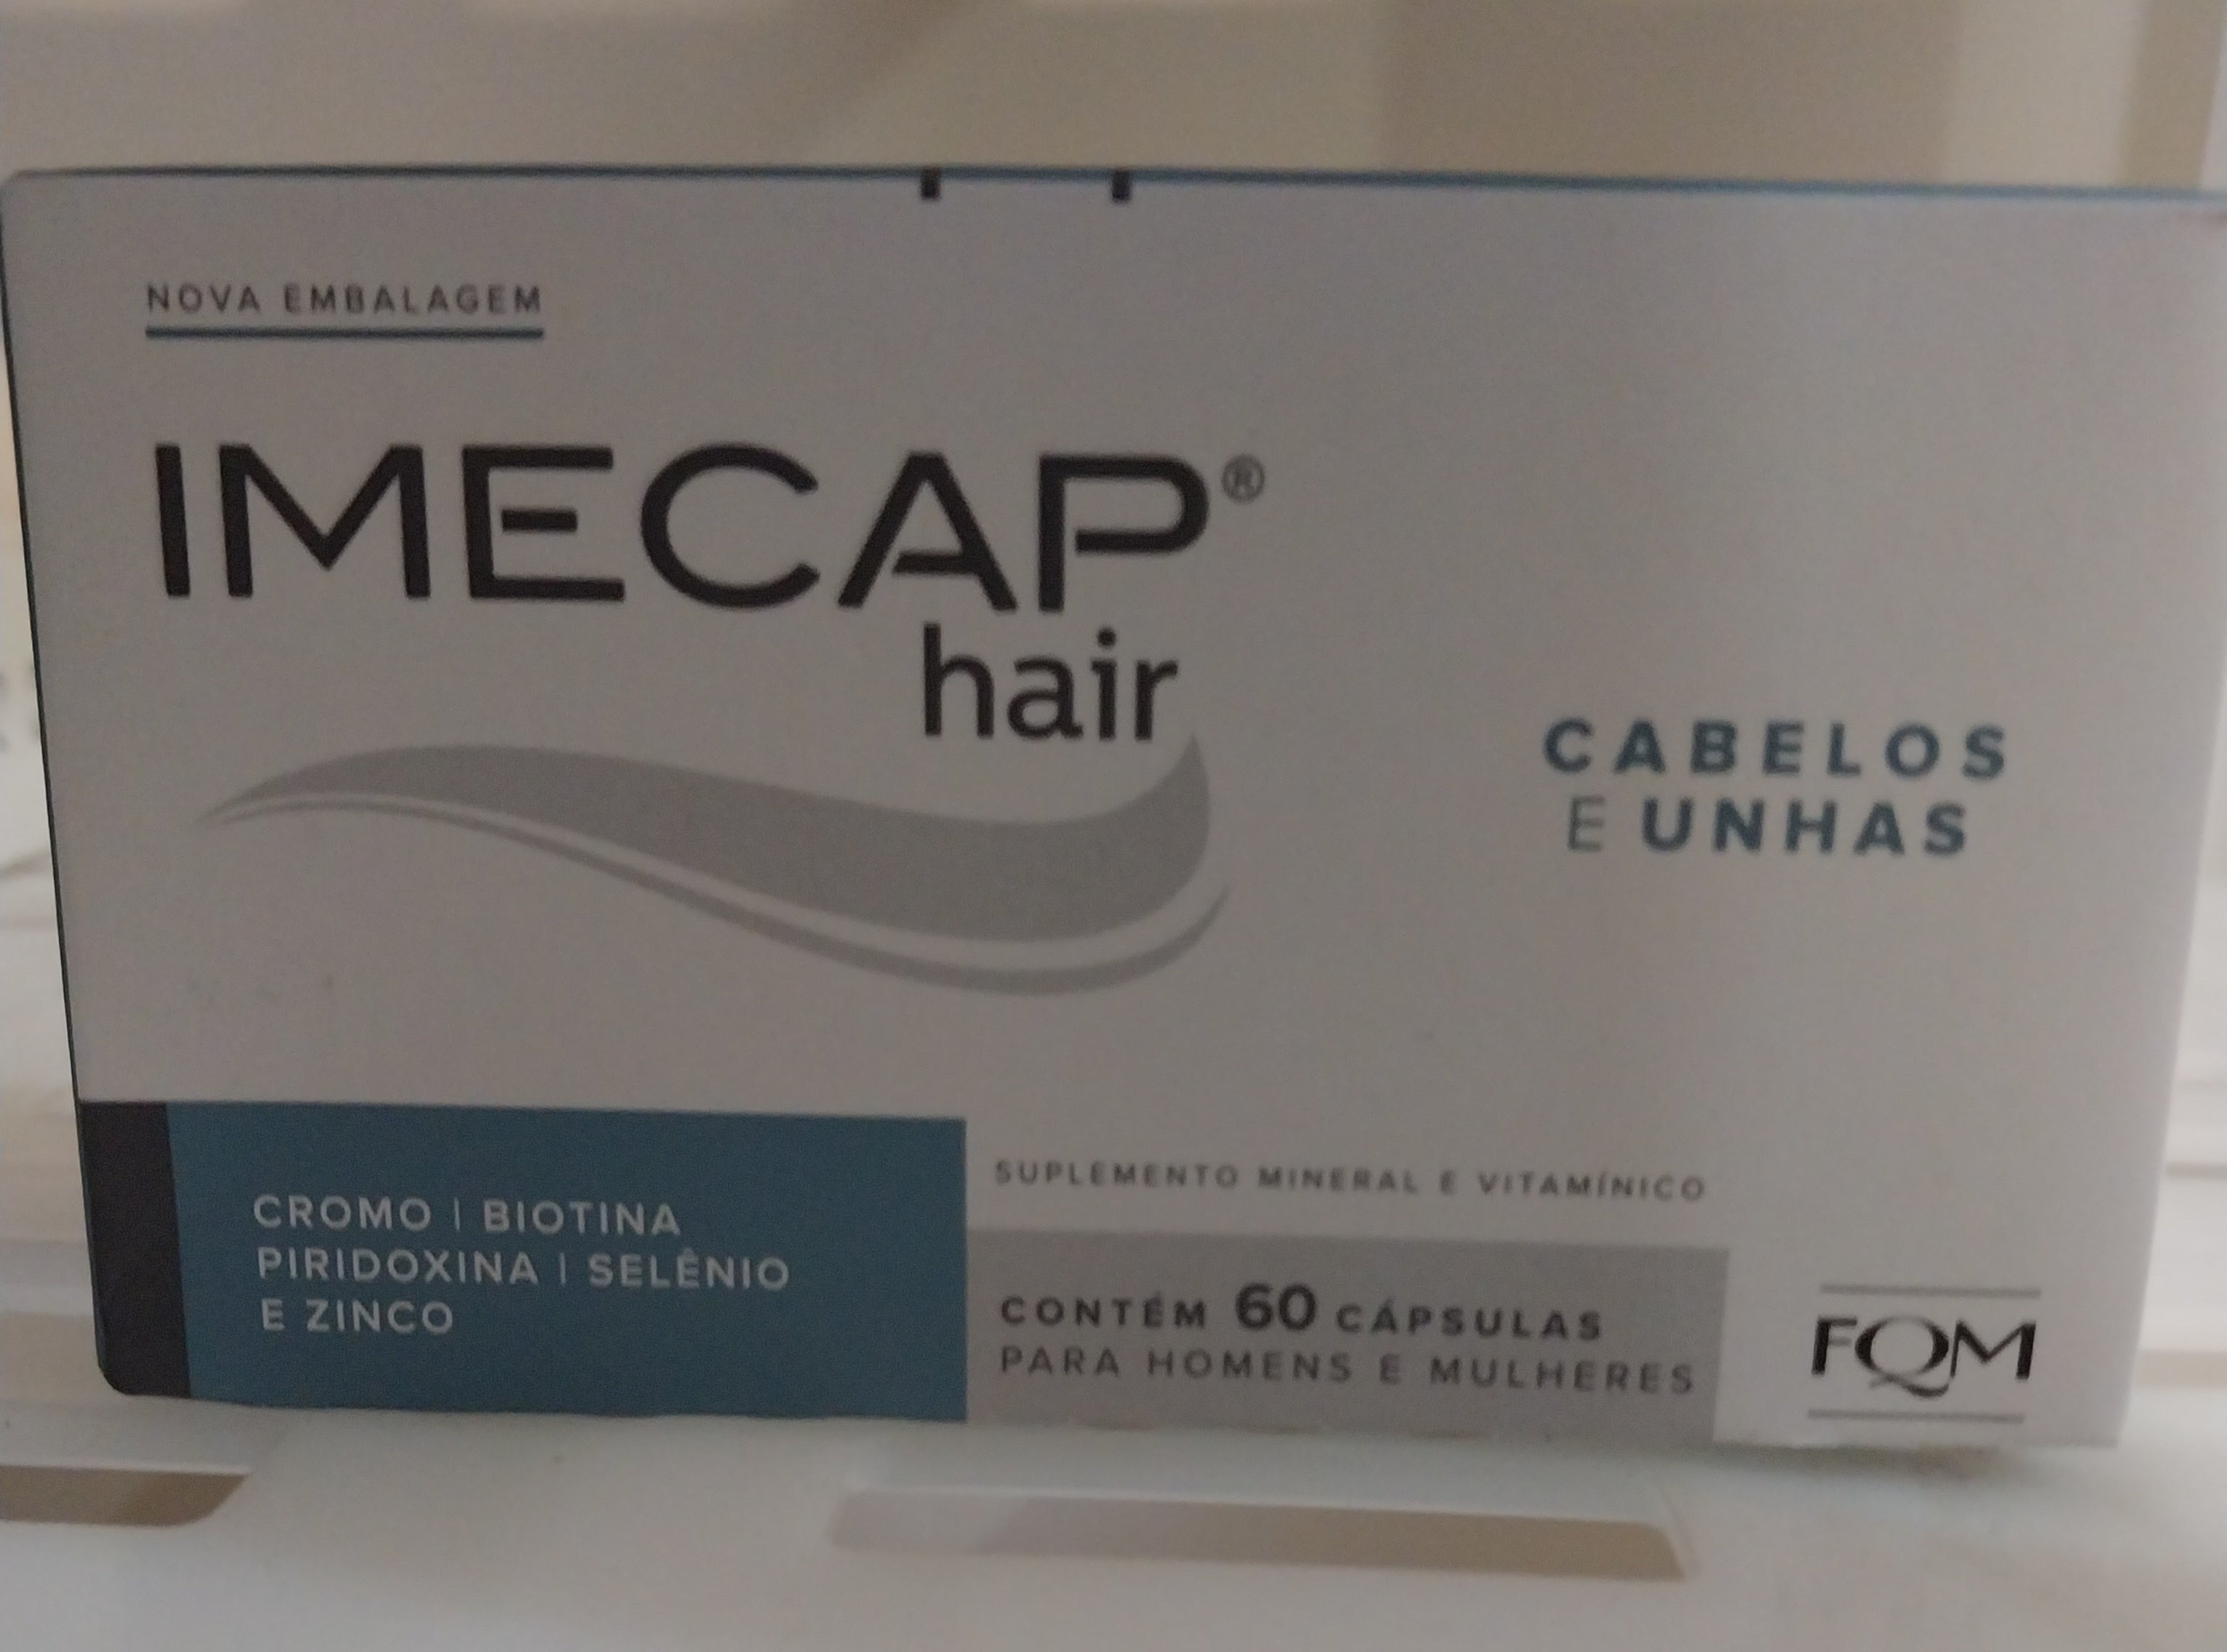 Imecap Capsules Hair Supplement Hair and Nails 60 capsules - Imecap